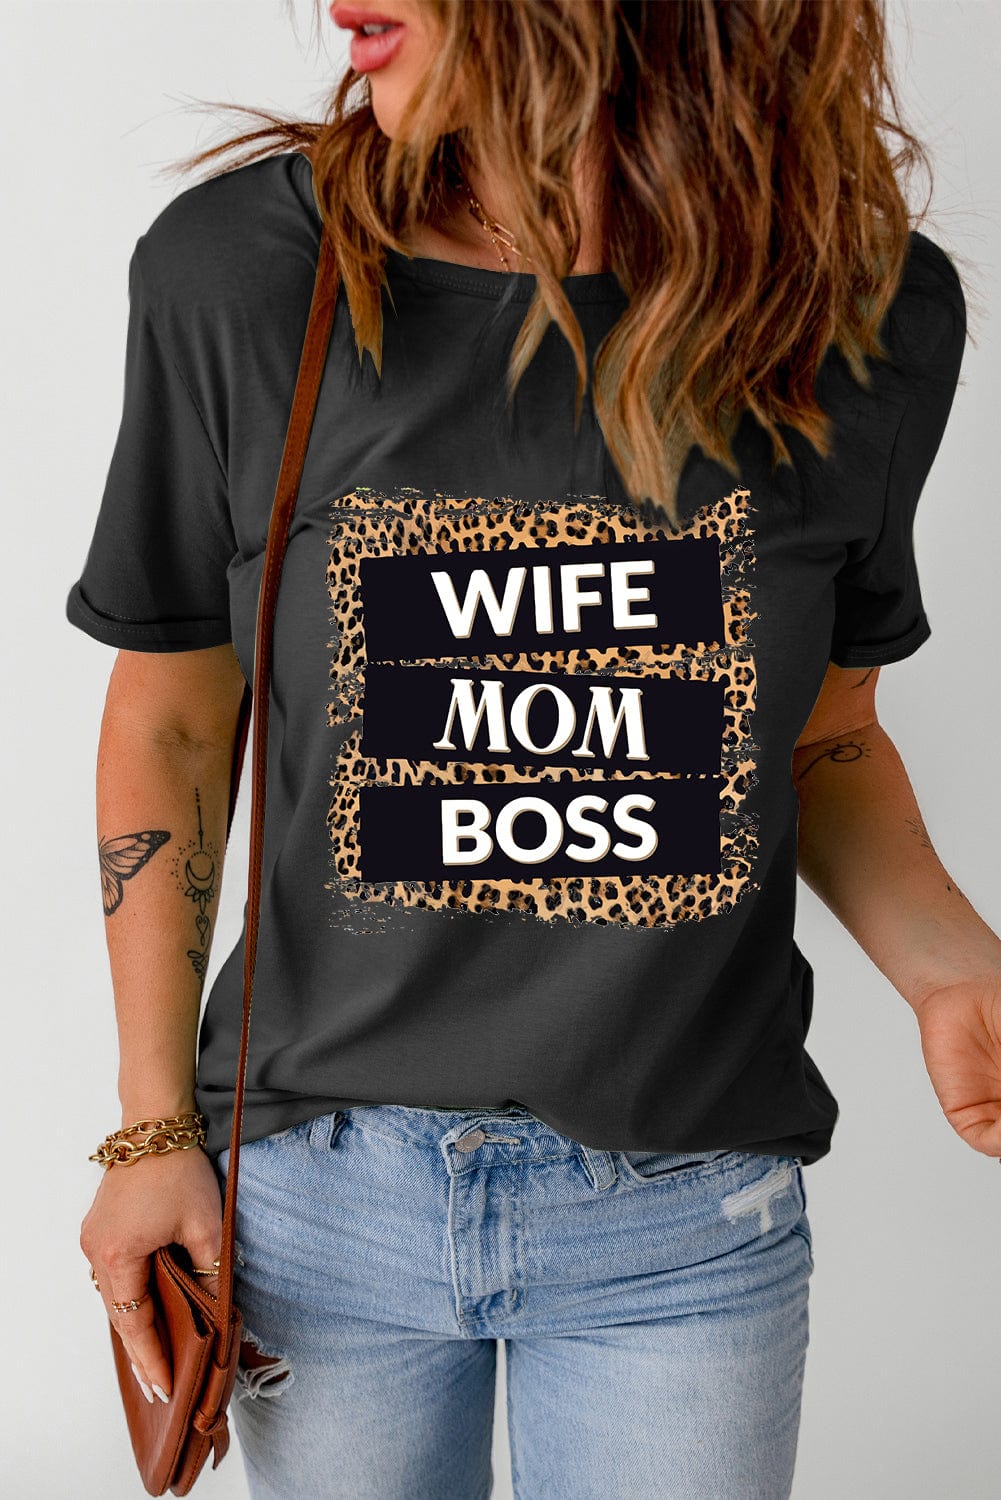 WIFE MOM BOSS Leopard Graphic Tee - Body By J'ne